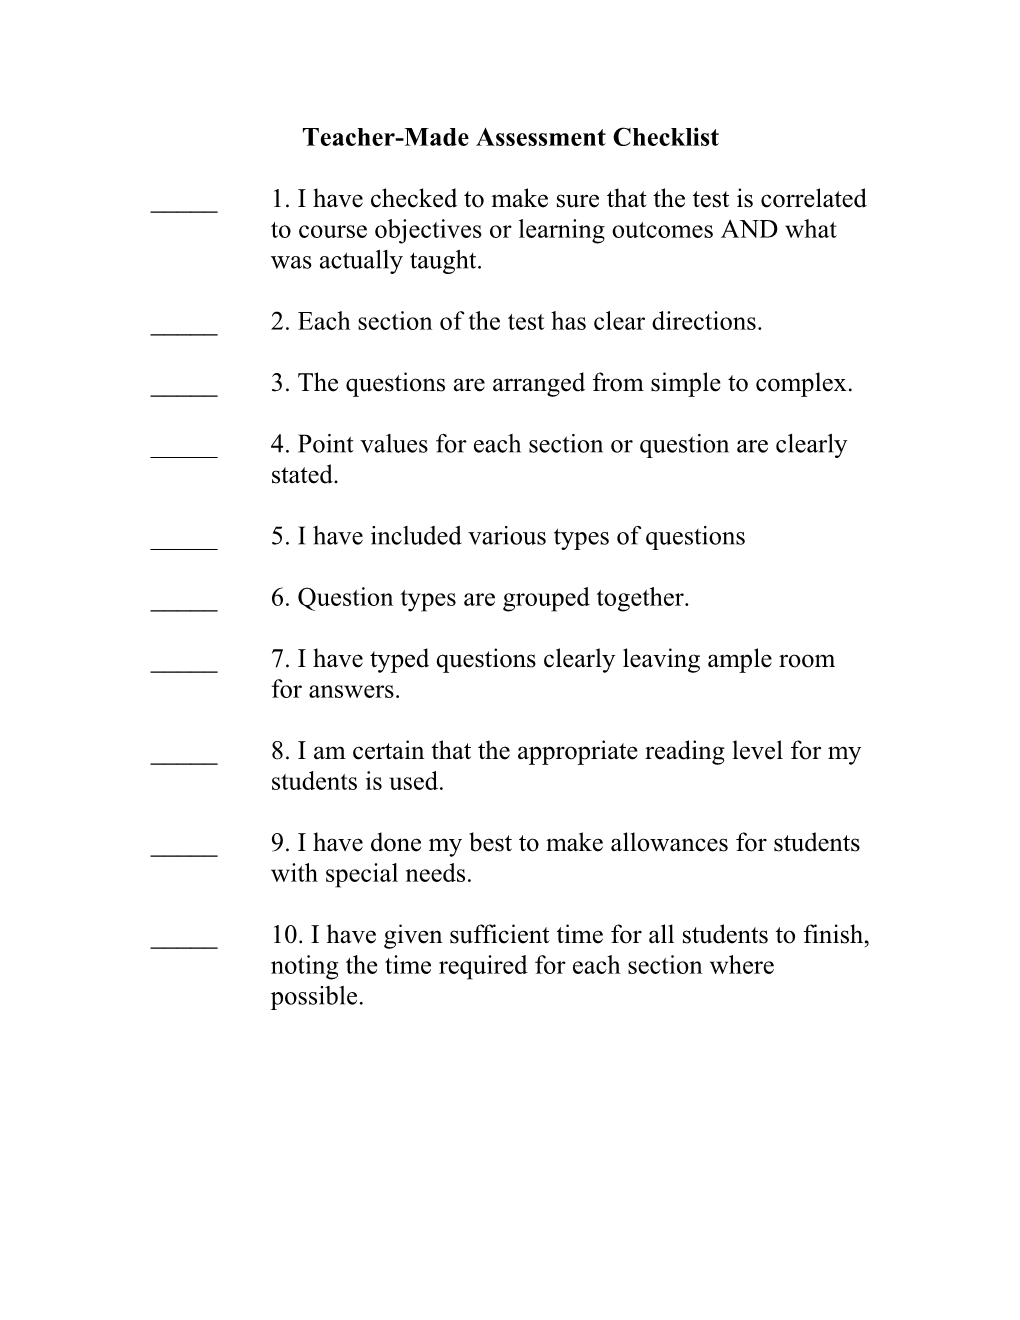 Teacher-Made Assessment Checklist